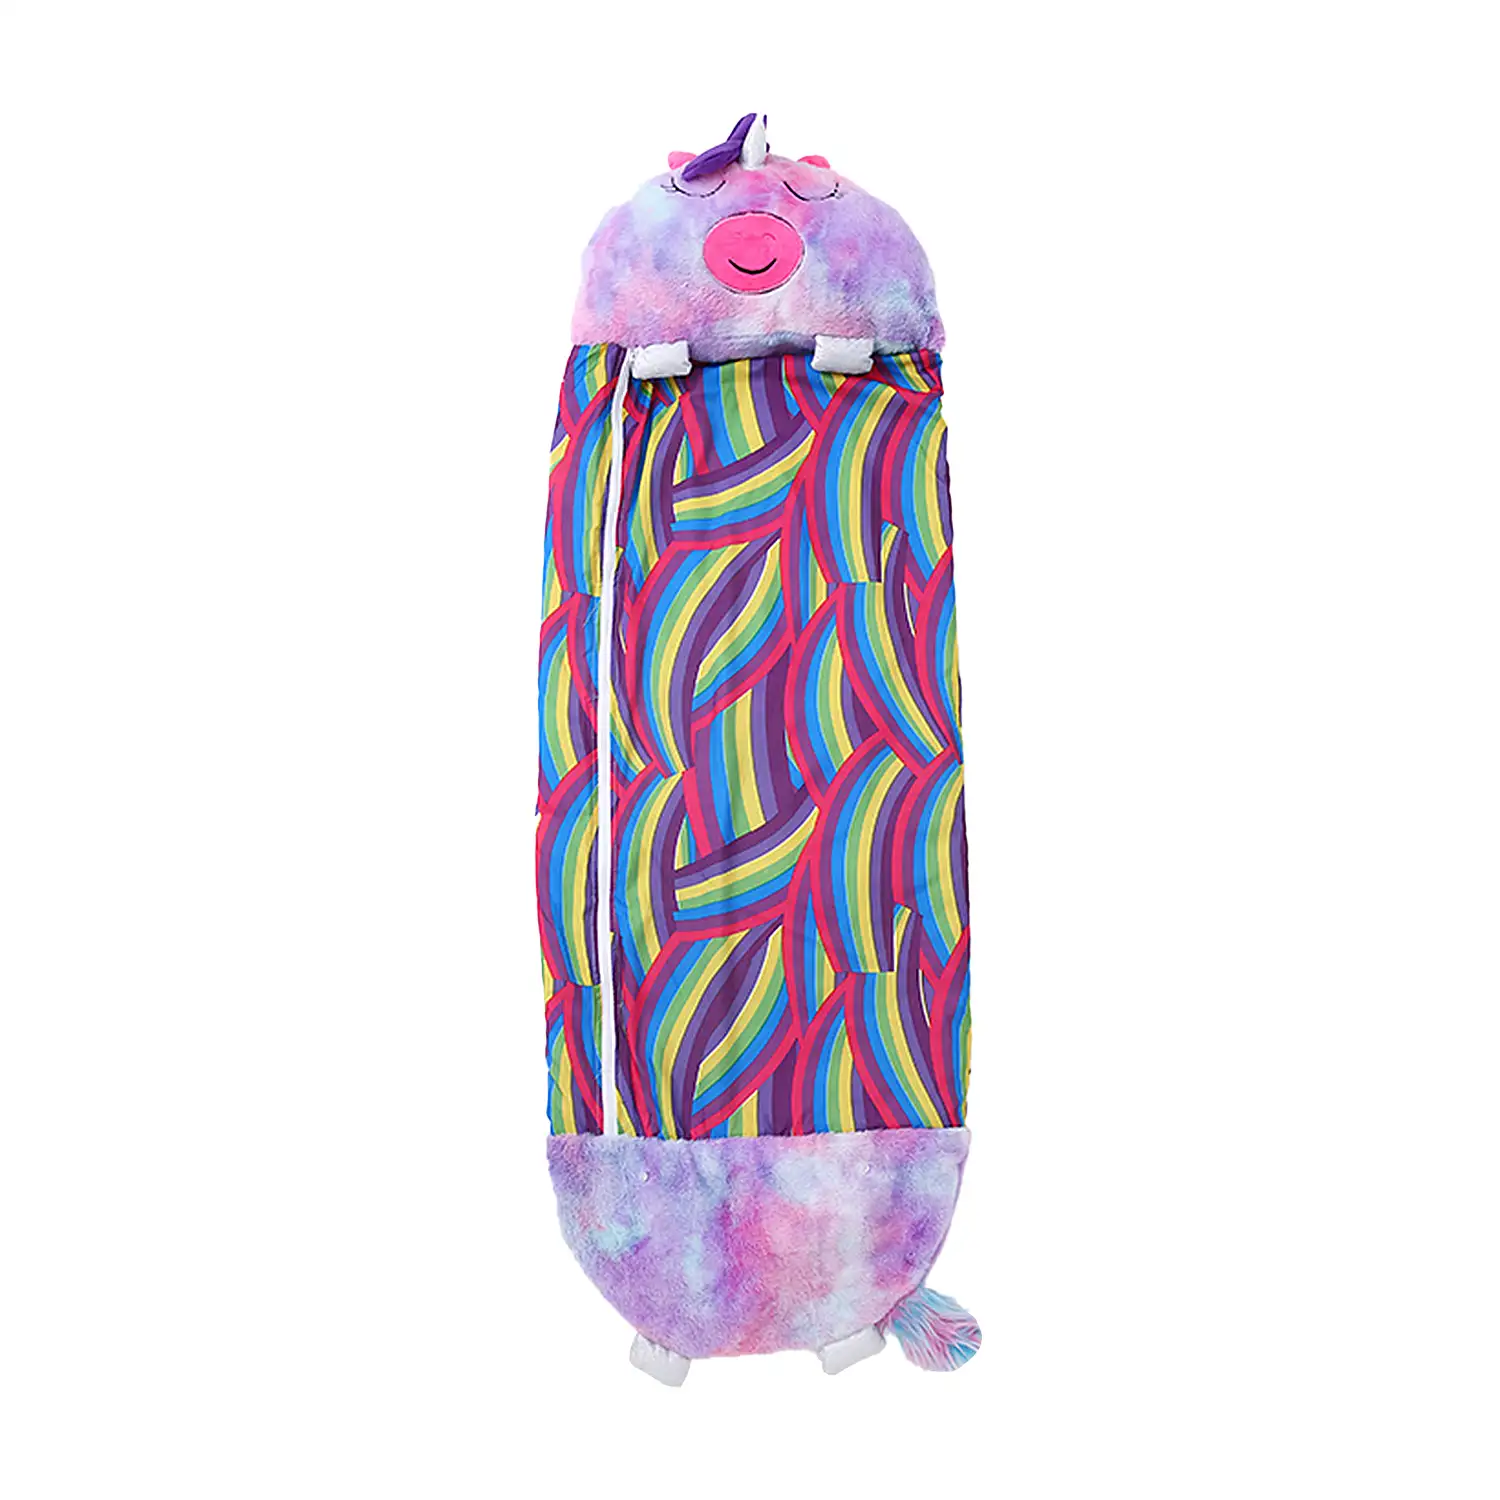 Saco de dormir convertible en almohada, para niños, Unicornio Multicolor Violeta. Tacto peluche. Grande /L: 170x70cm.